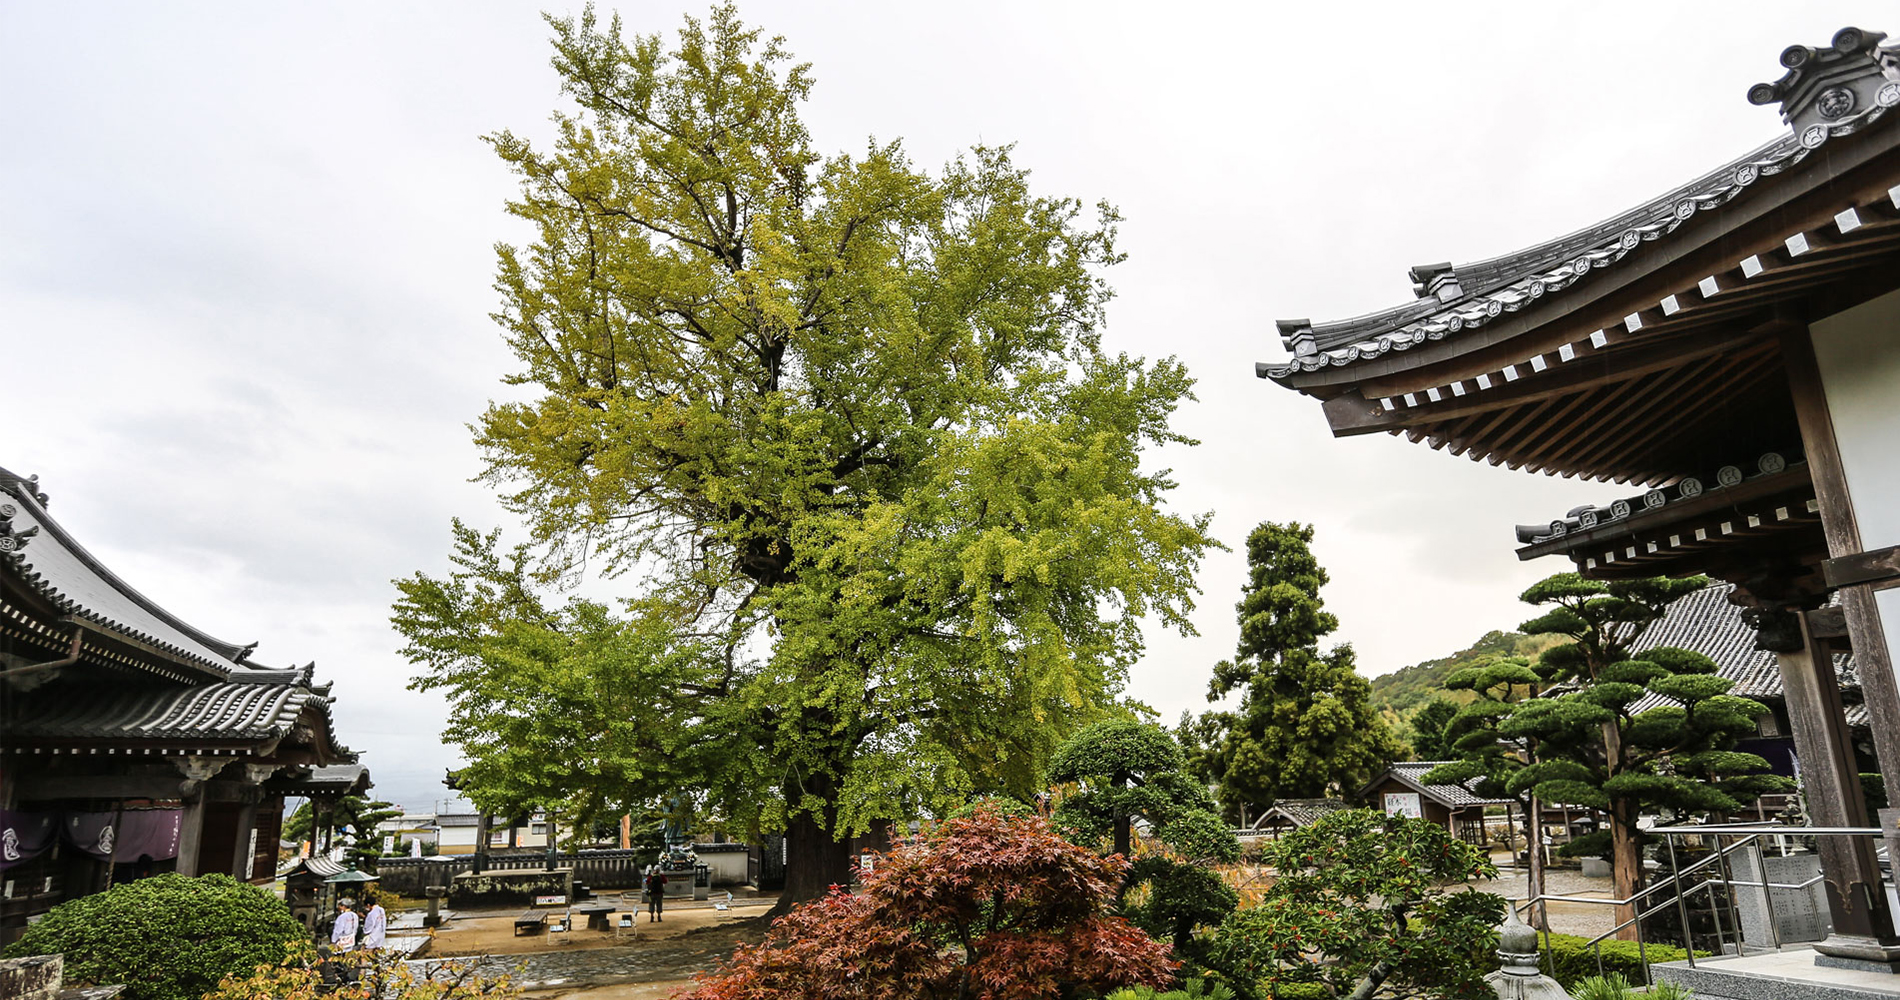 L’énorme arbre ginko dans la cour du temple de Jizoji